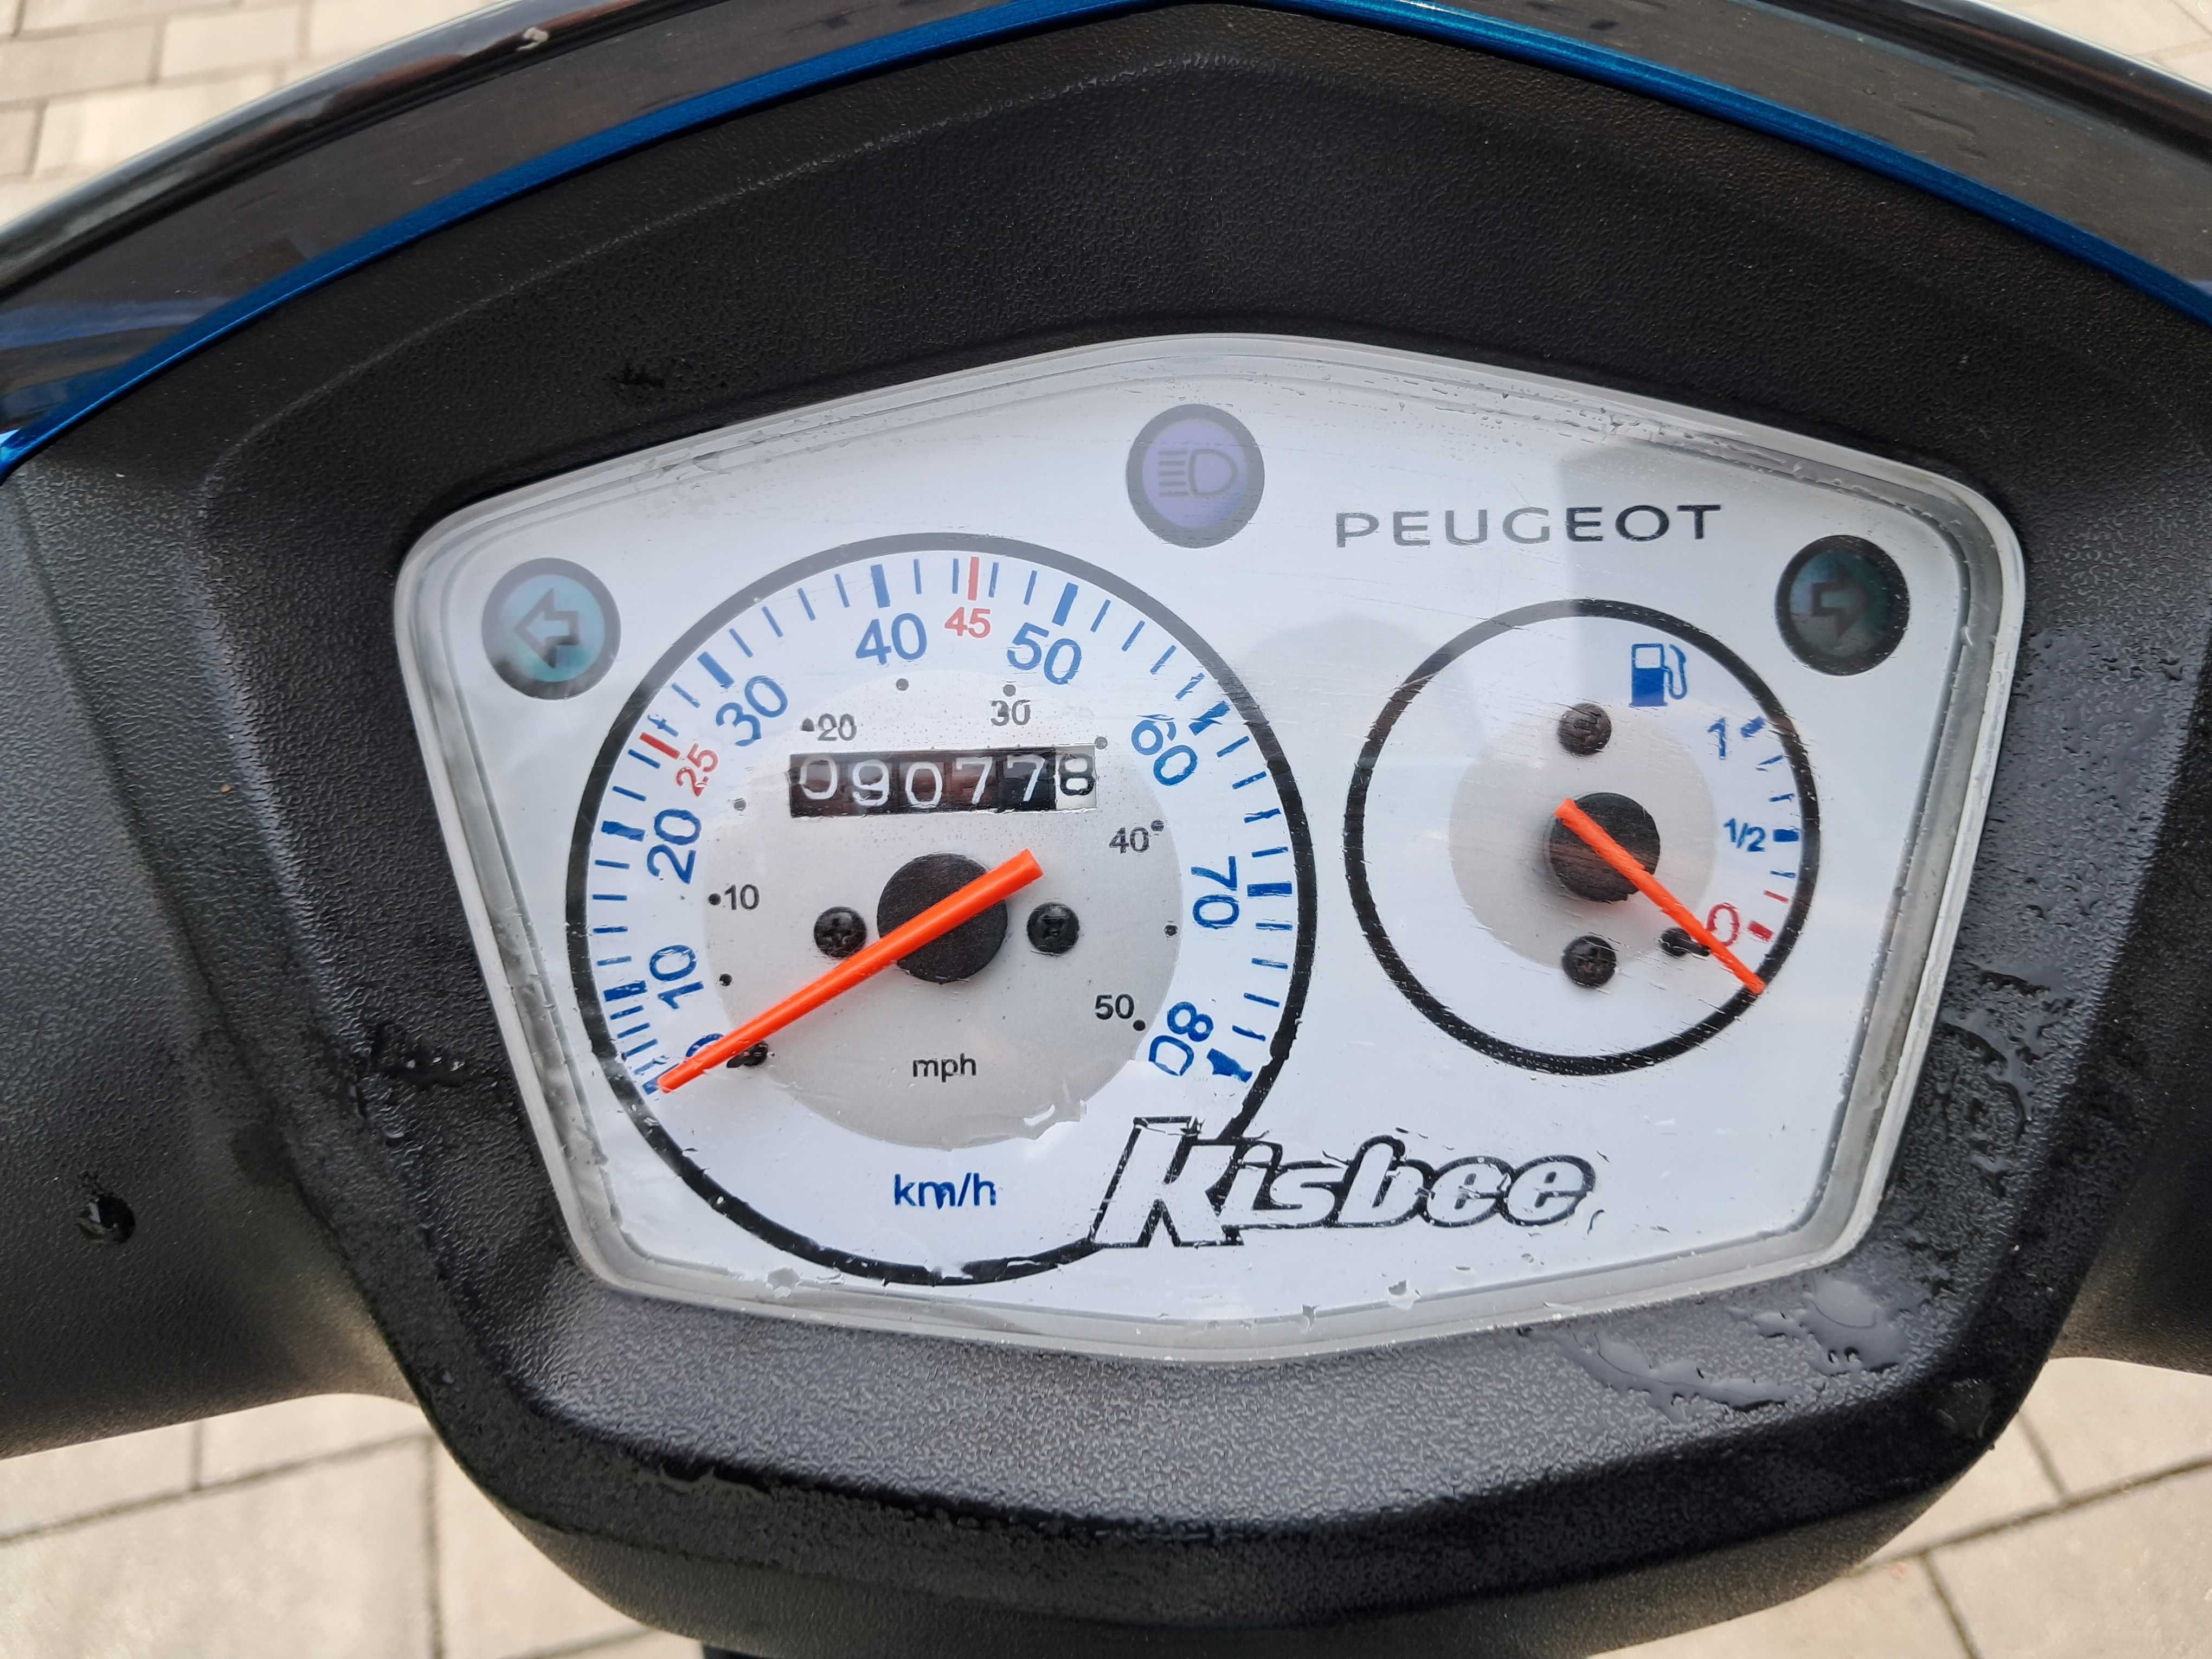 Peugeot kisbee skuter